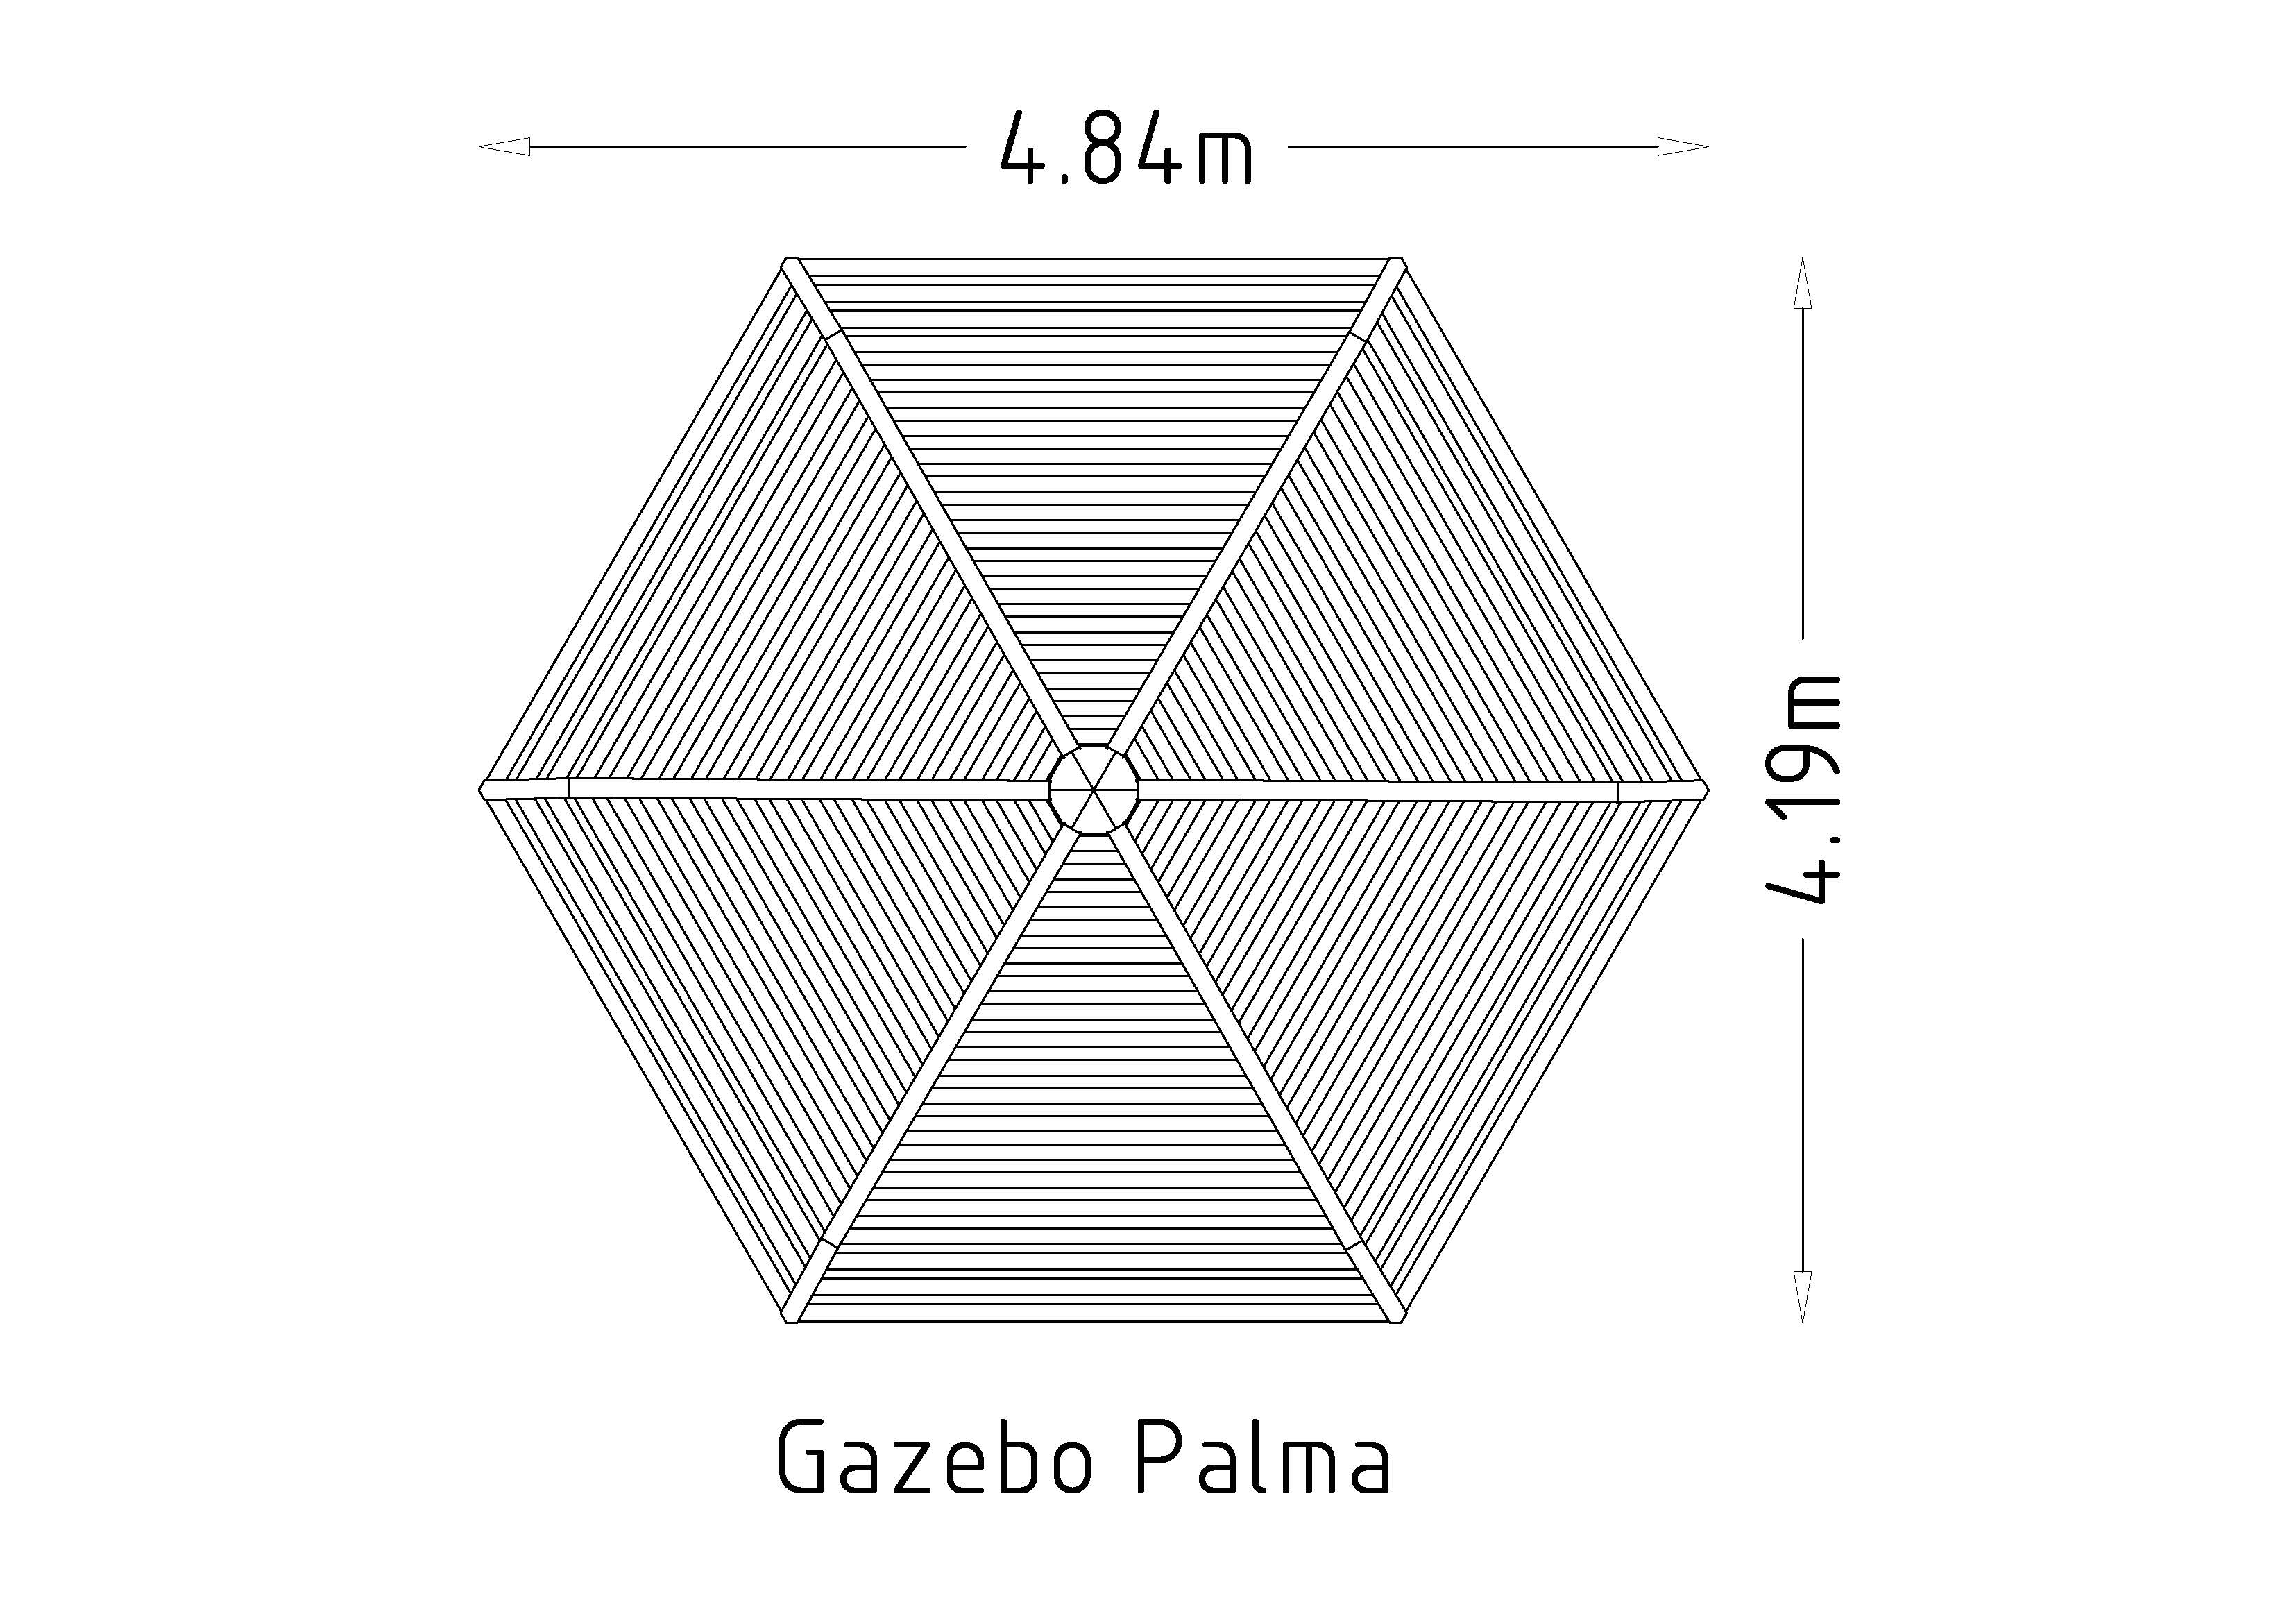 Gazebo Palma